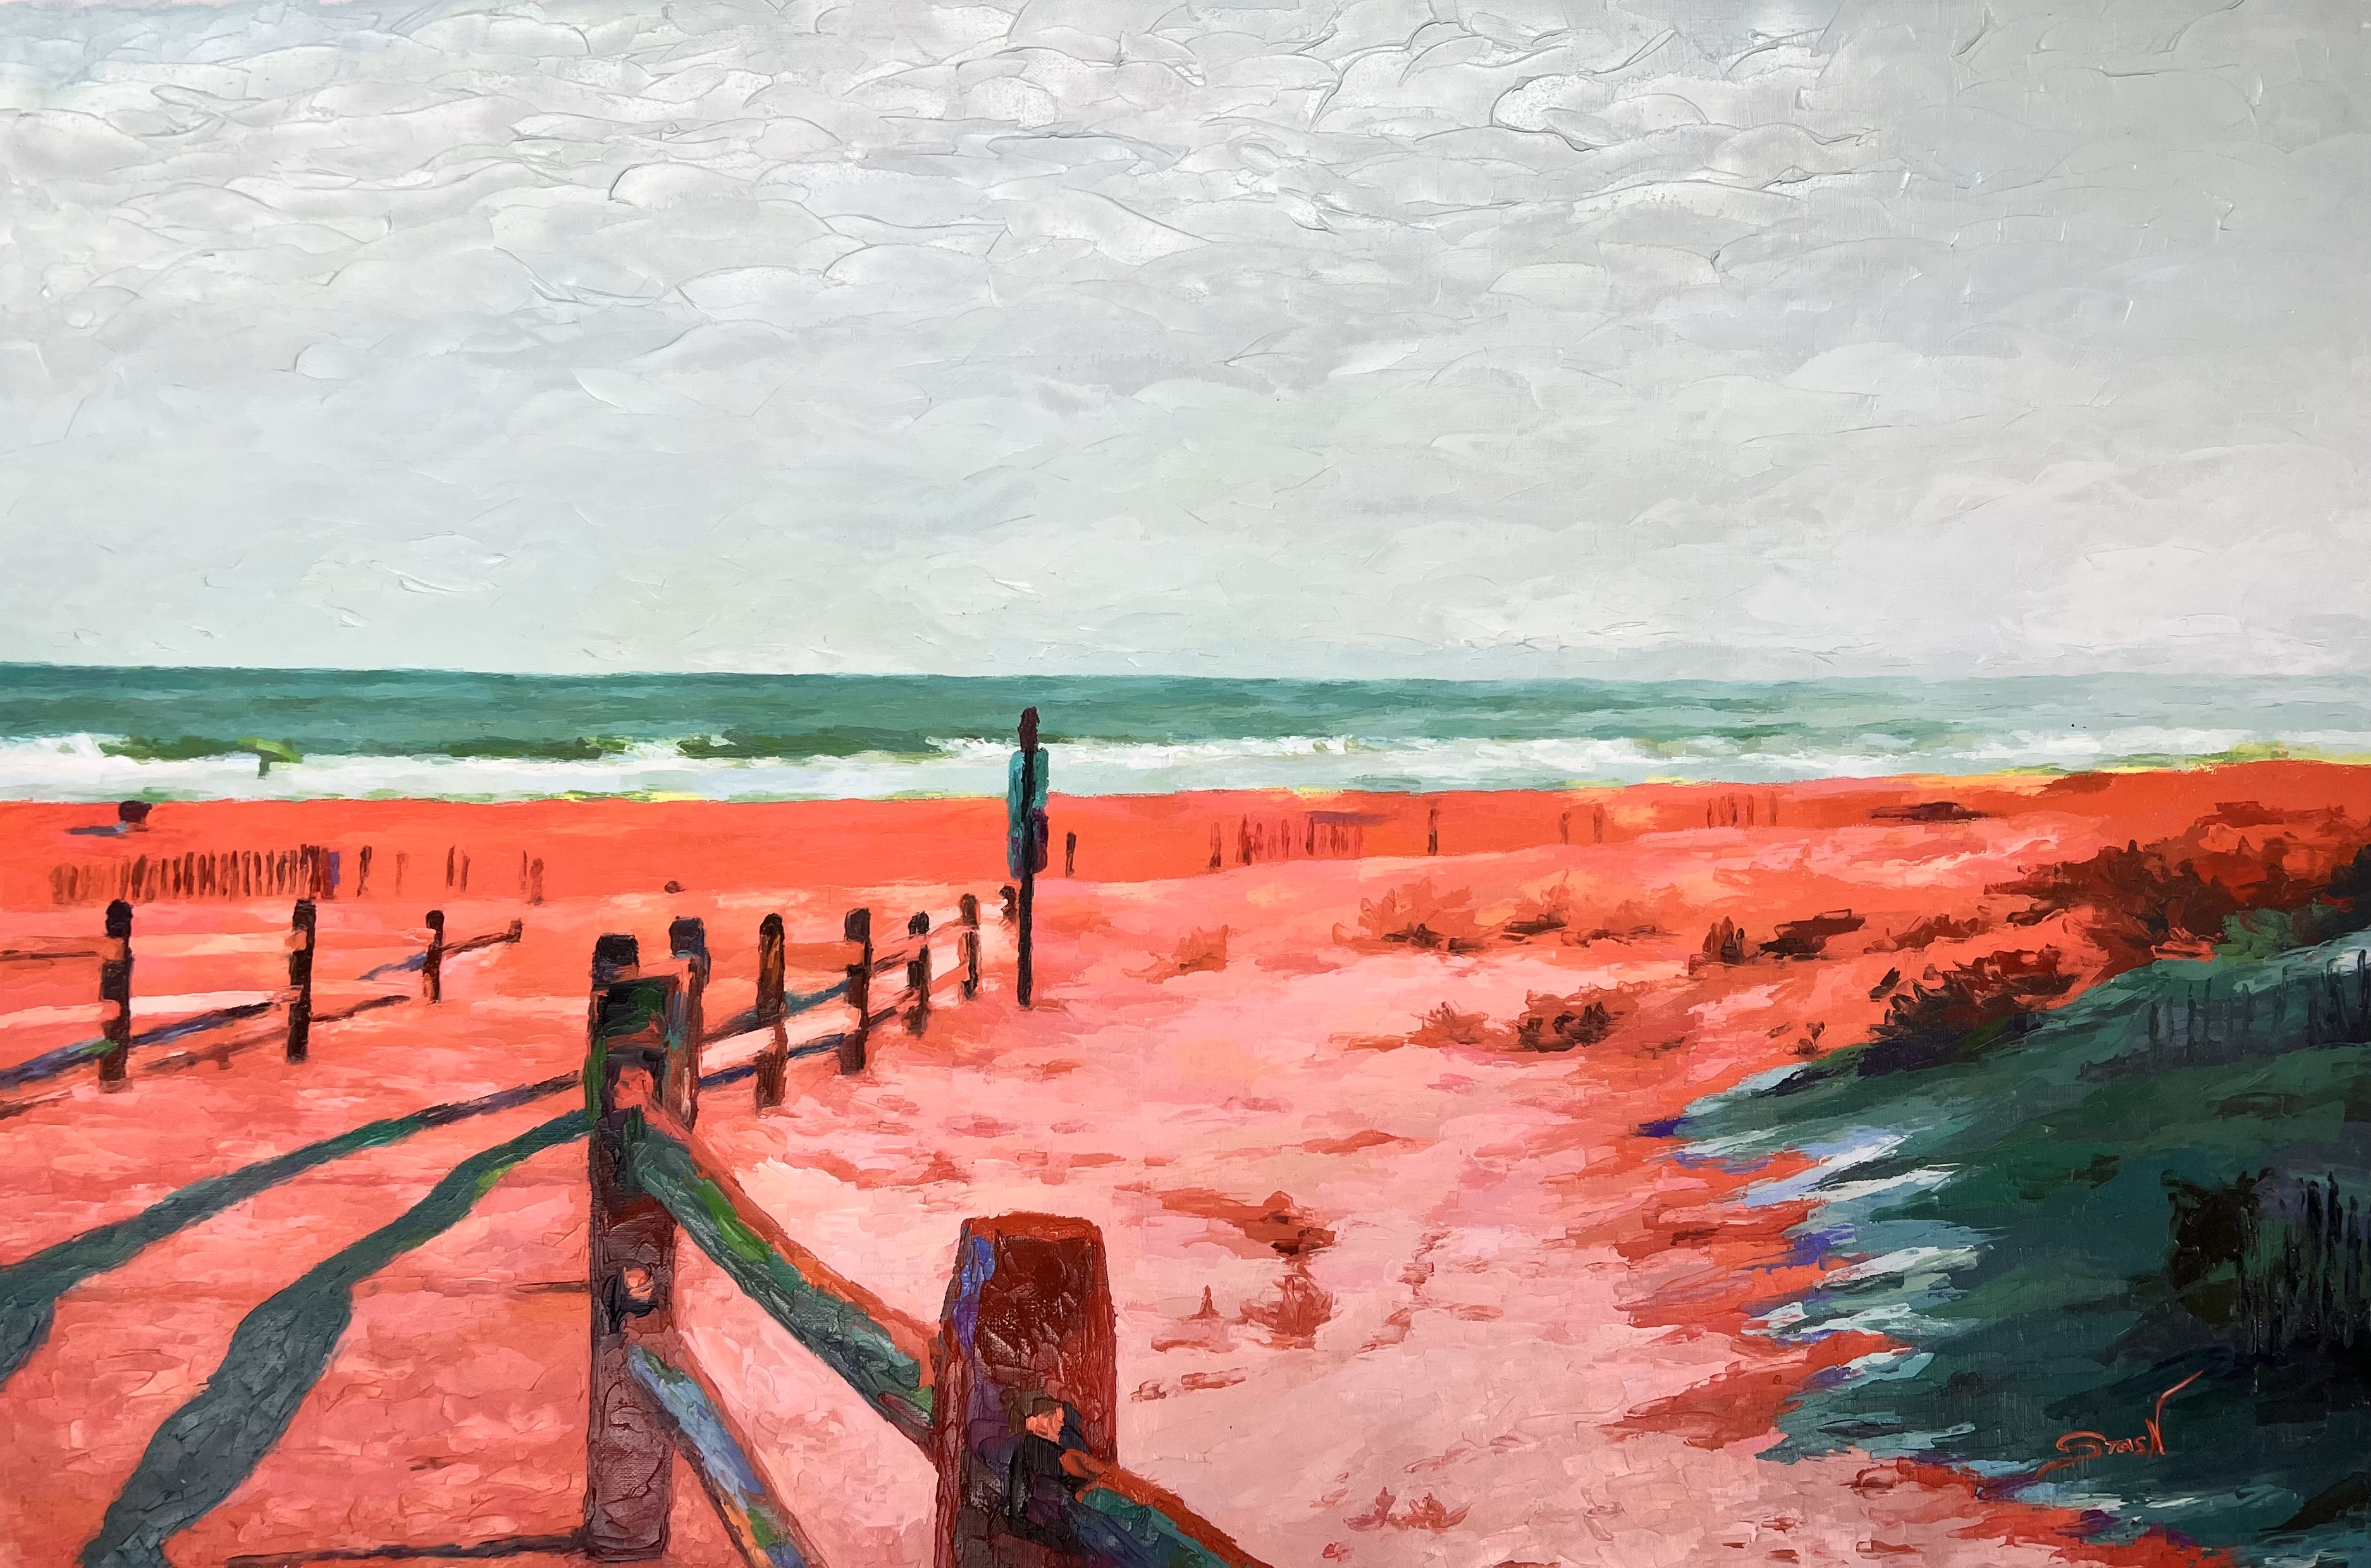 STAS NAMIN - Beach Path - Oil on Canvas - 24x36 inches